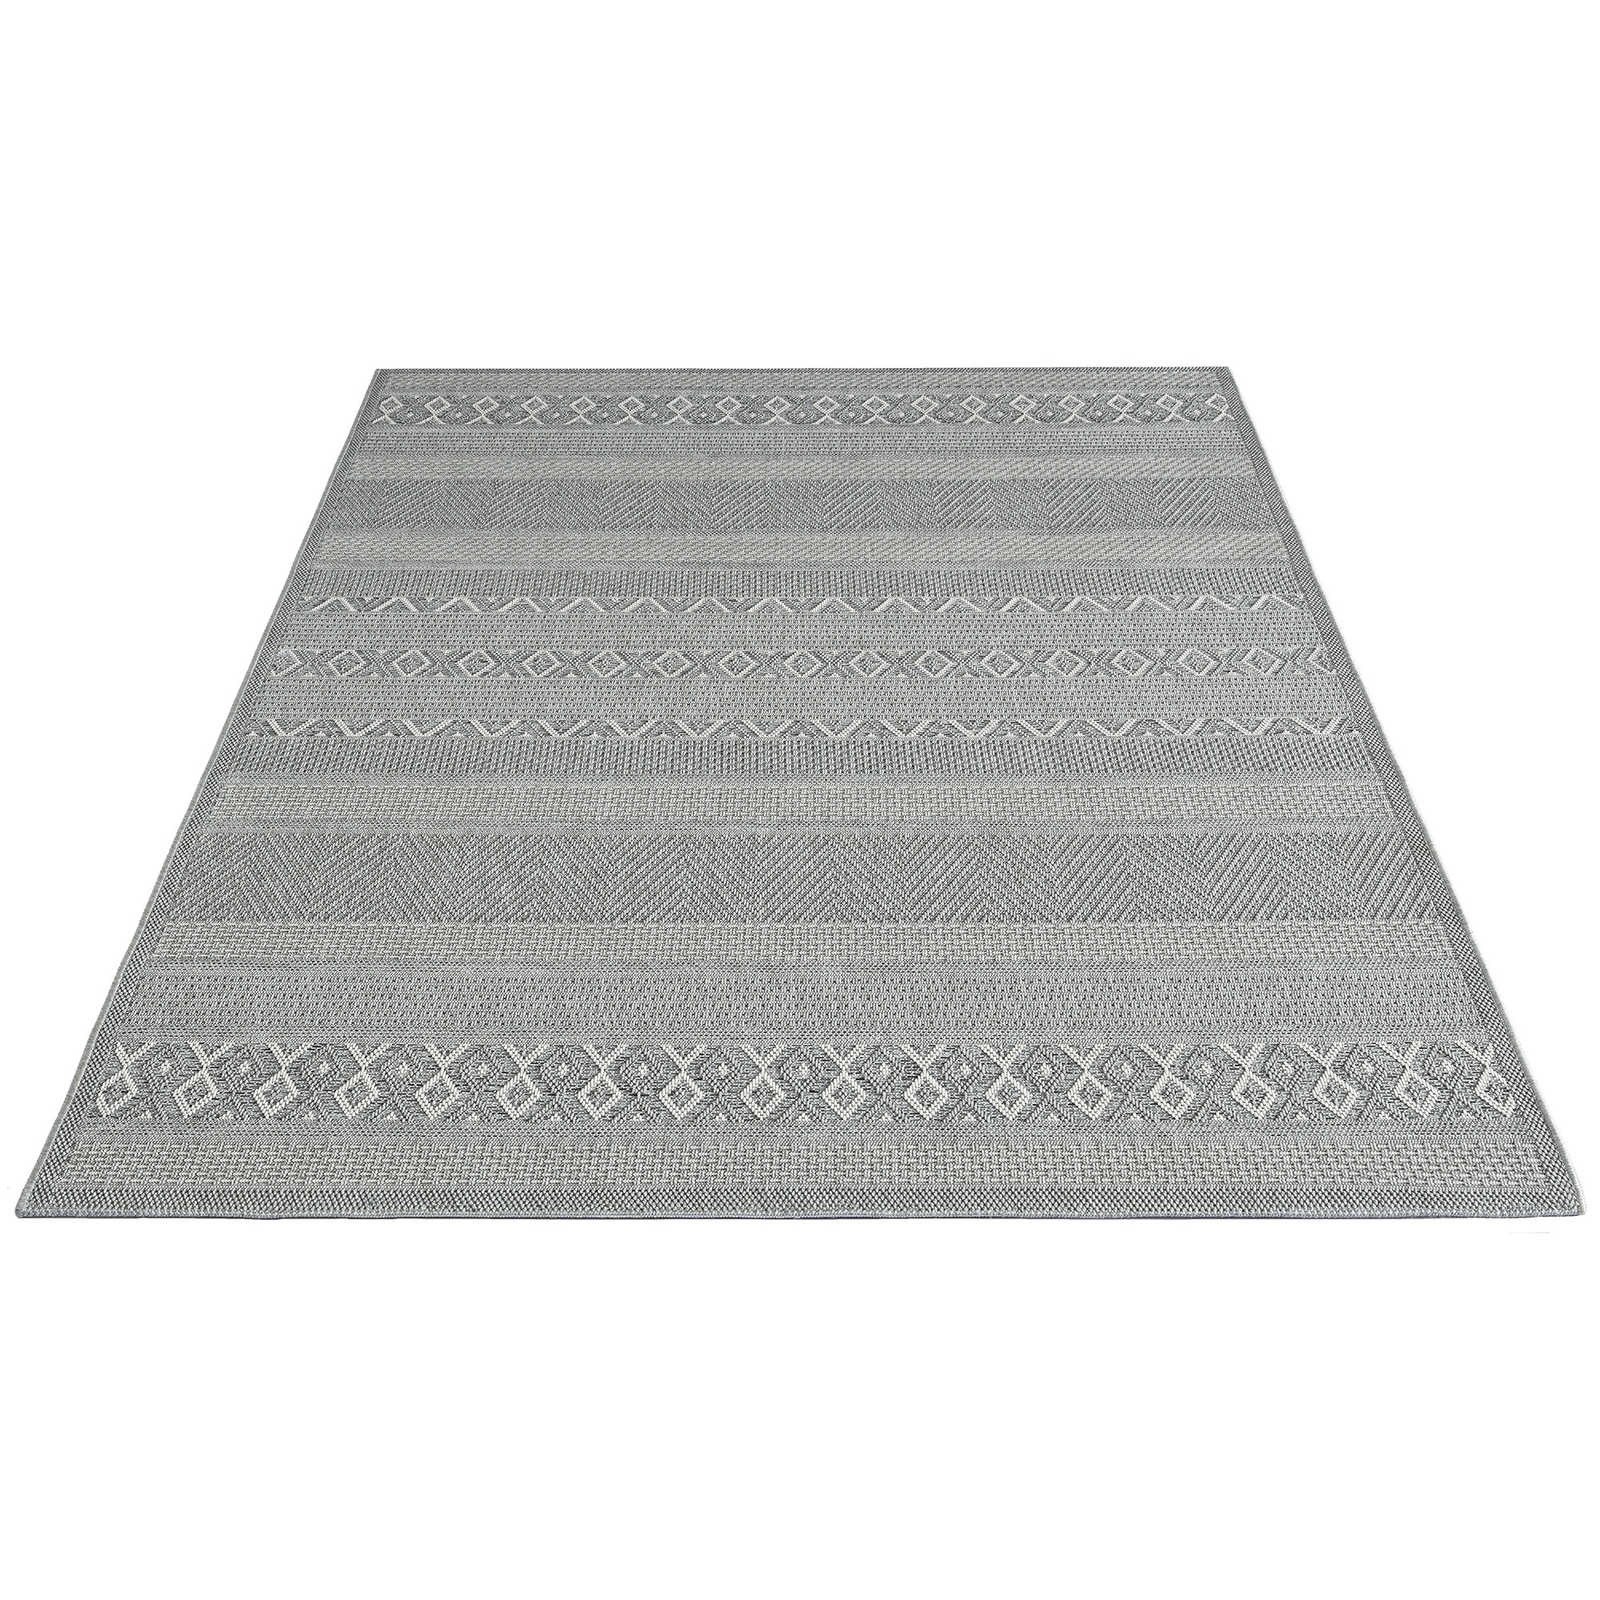 Tappeto da esterno a motivi semplici in grigio - 280 x 200 cm
